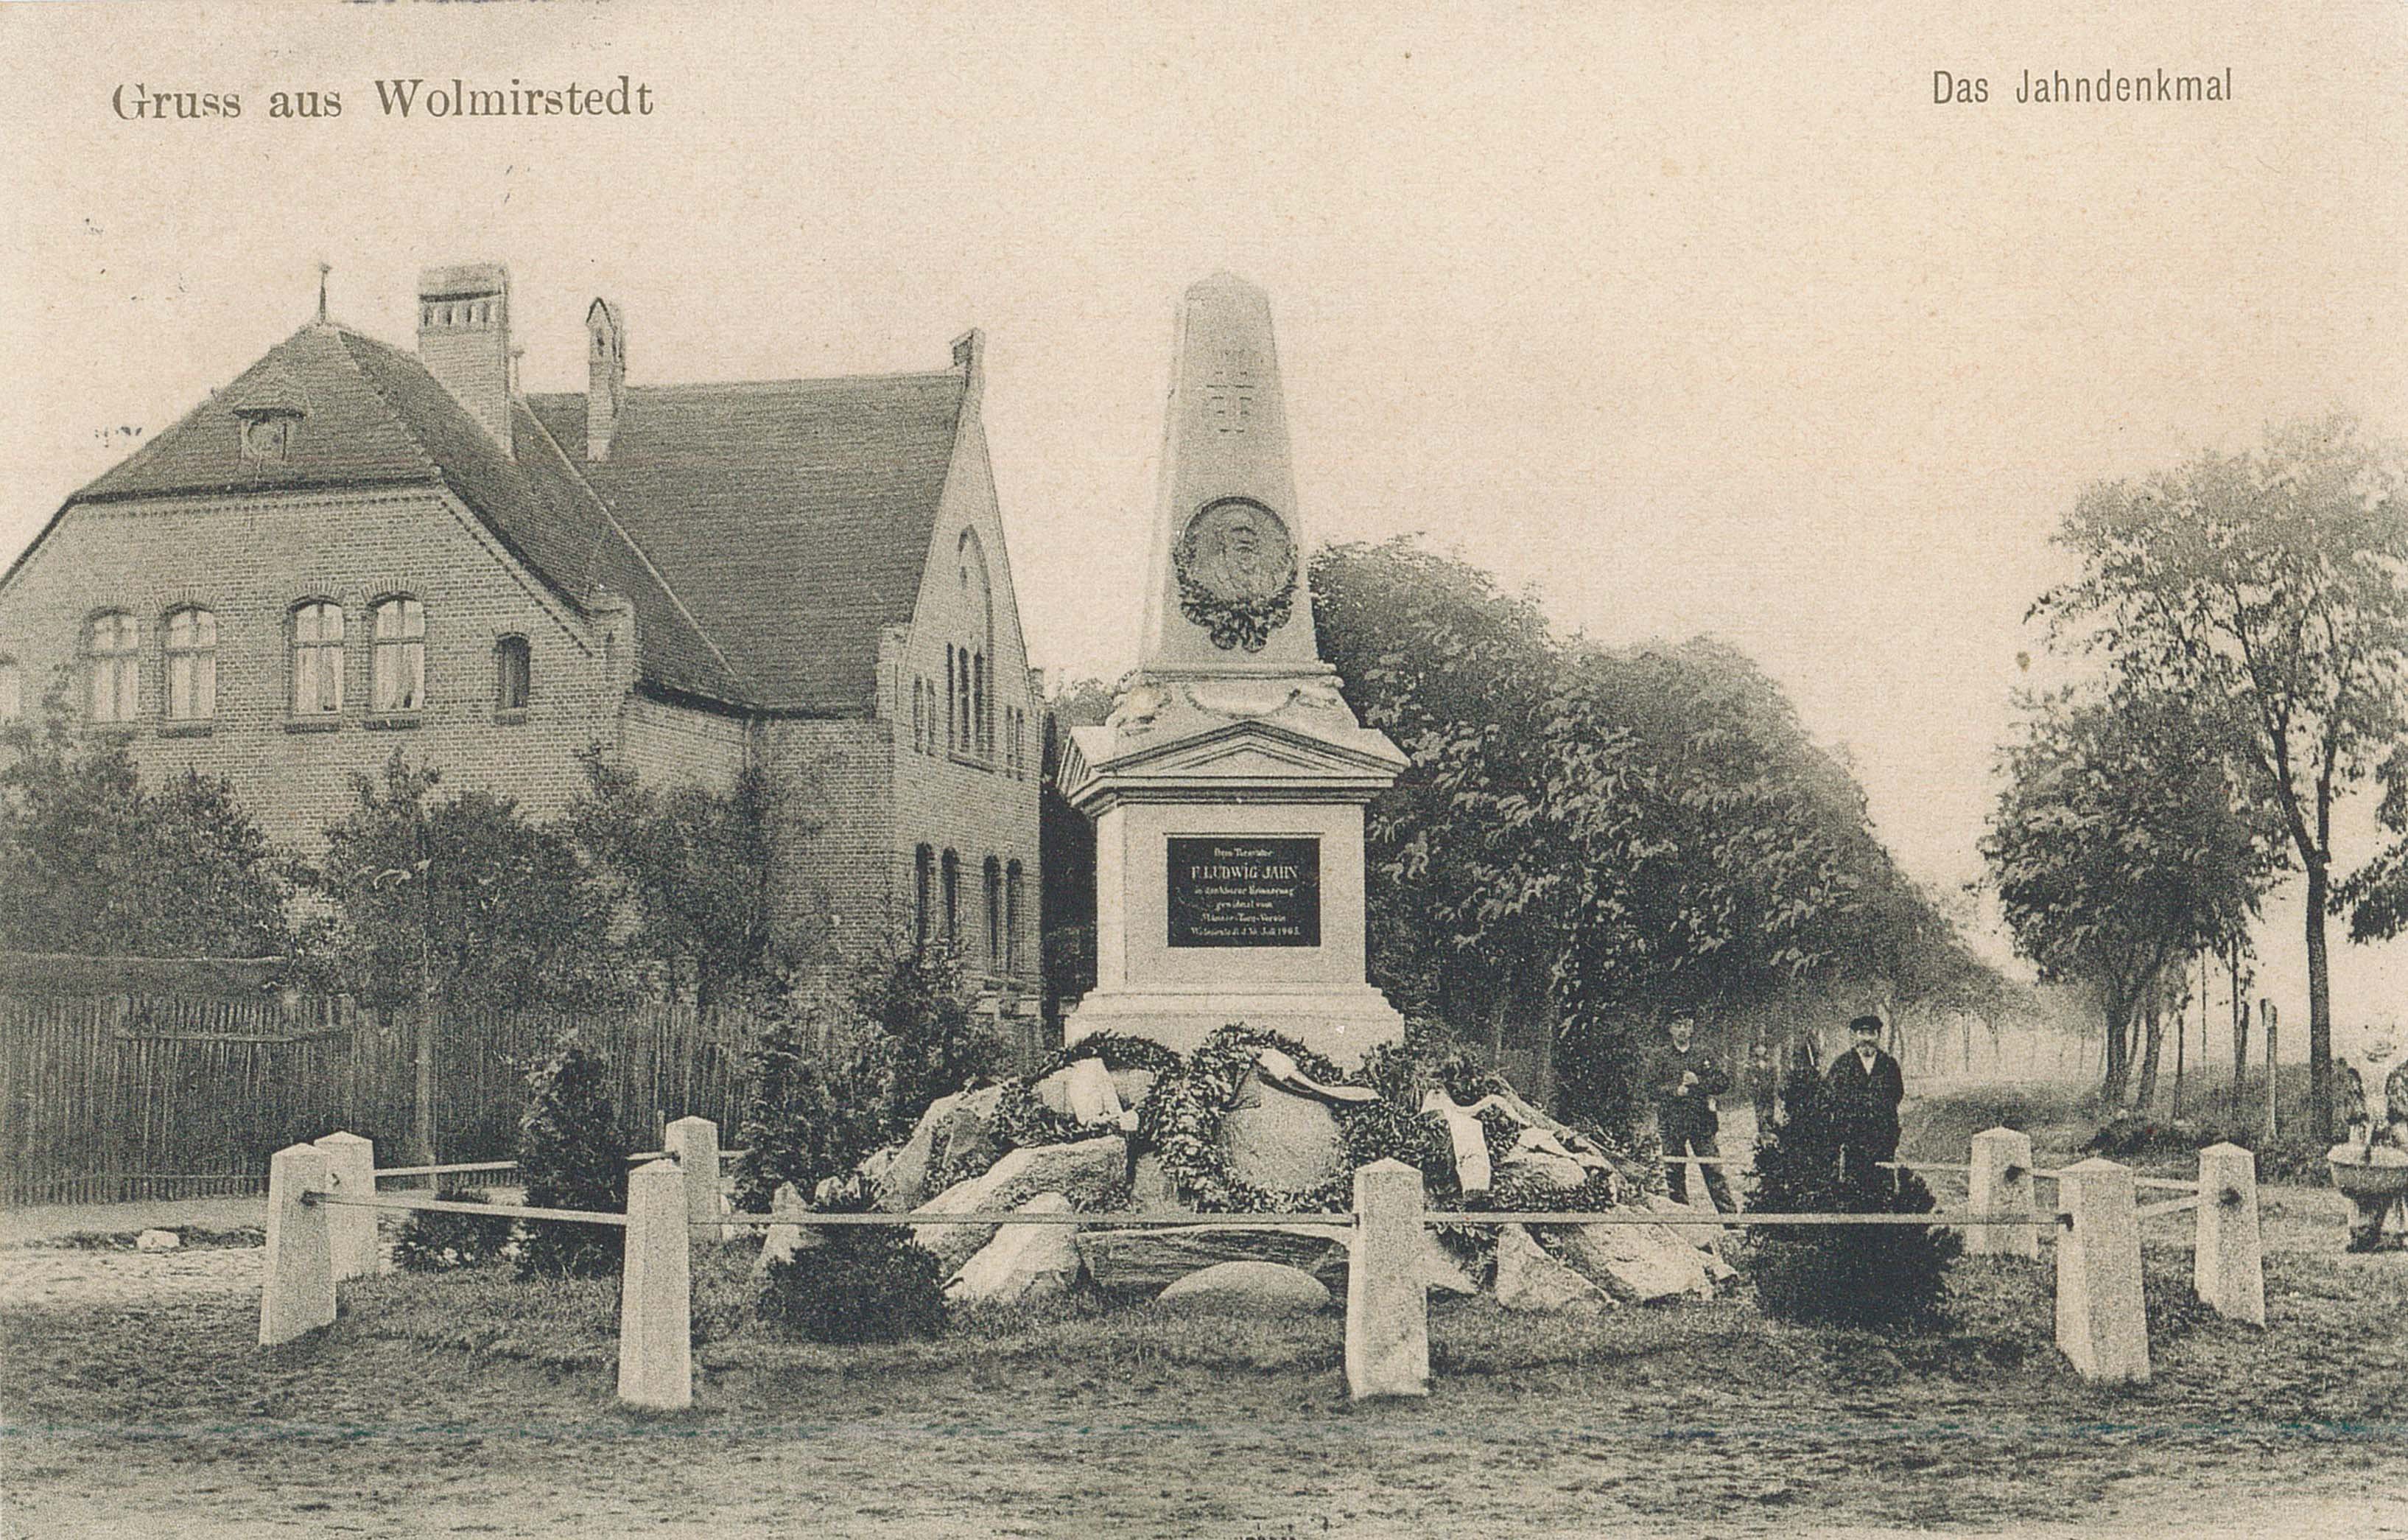 Ansichtskarte "Jahndenkmal, Wolmirstedt'", 31.12.1906 (Museum Wolmirstedt RR-F)